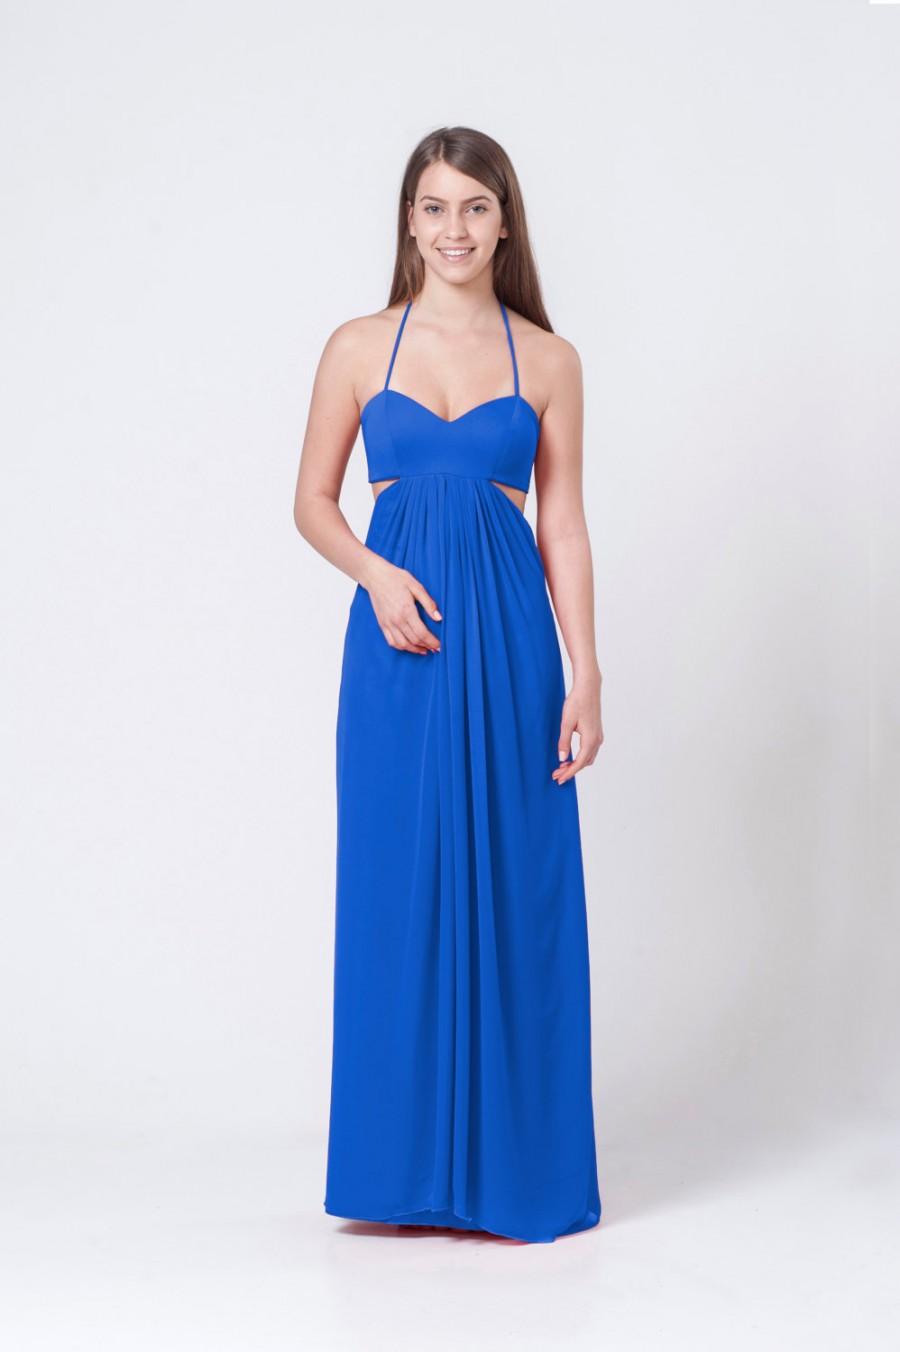 زفاف - Royal Blue Woman Dress, Maxi Dress, Party Dress for Women, Long Dress, Chiffon Dress, Cocktail Dress, Elegant Dress, Open Back Dress, Gown